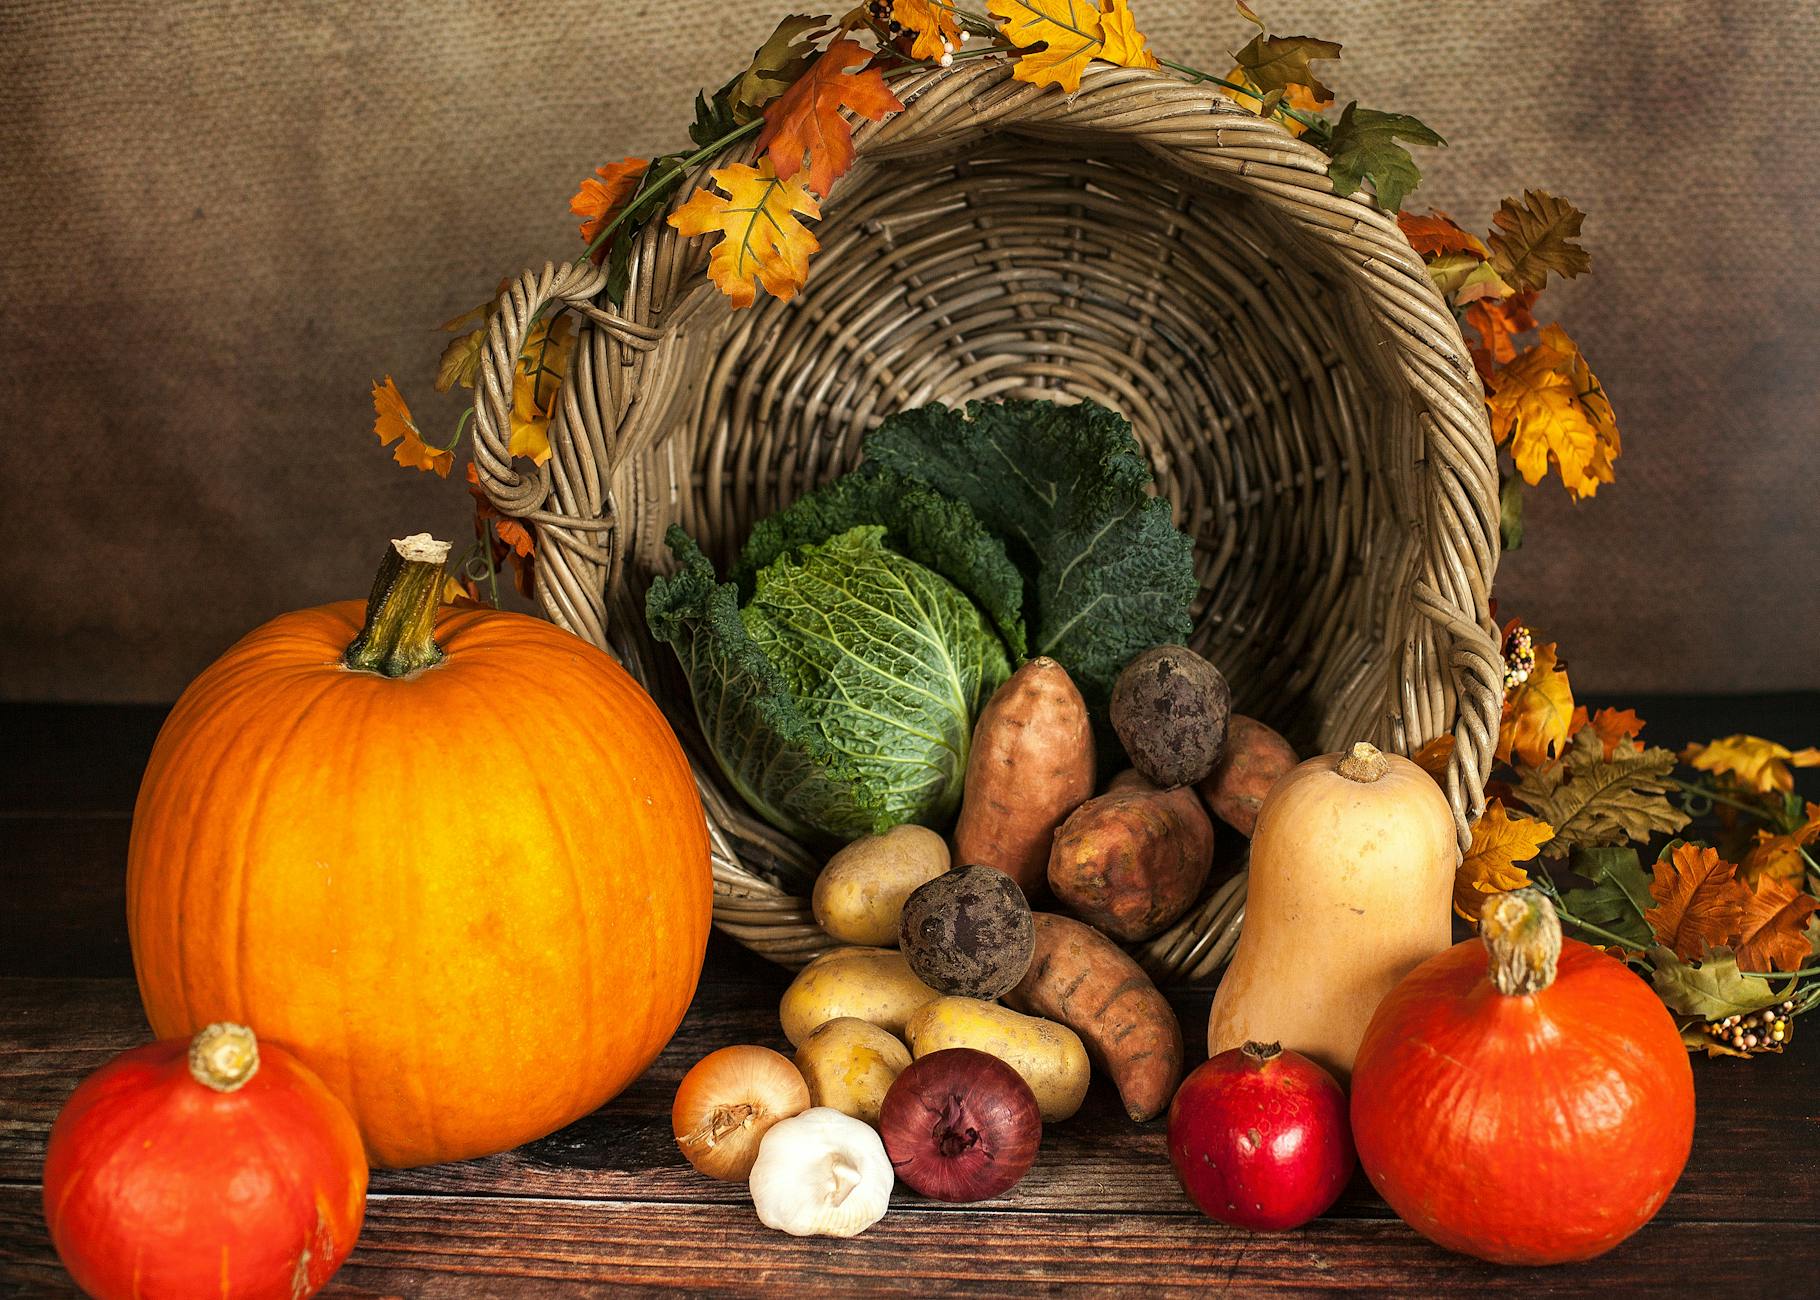 vegetable and crops beside spilled basket